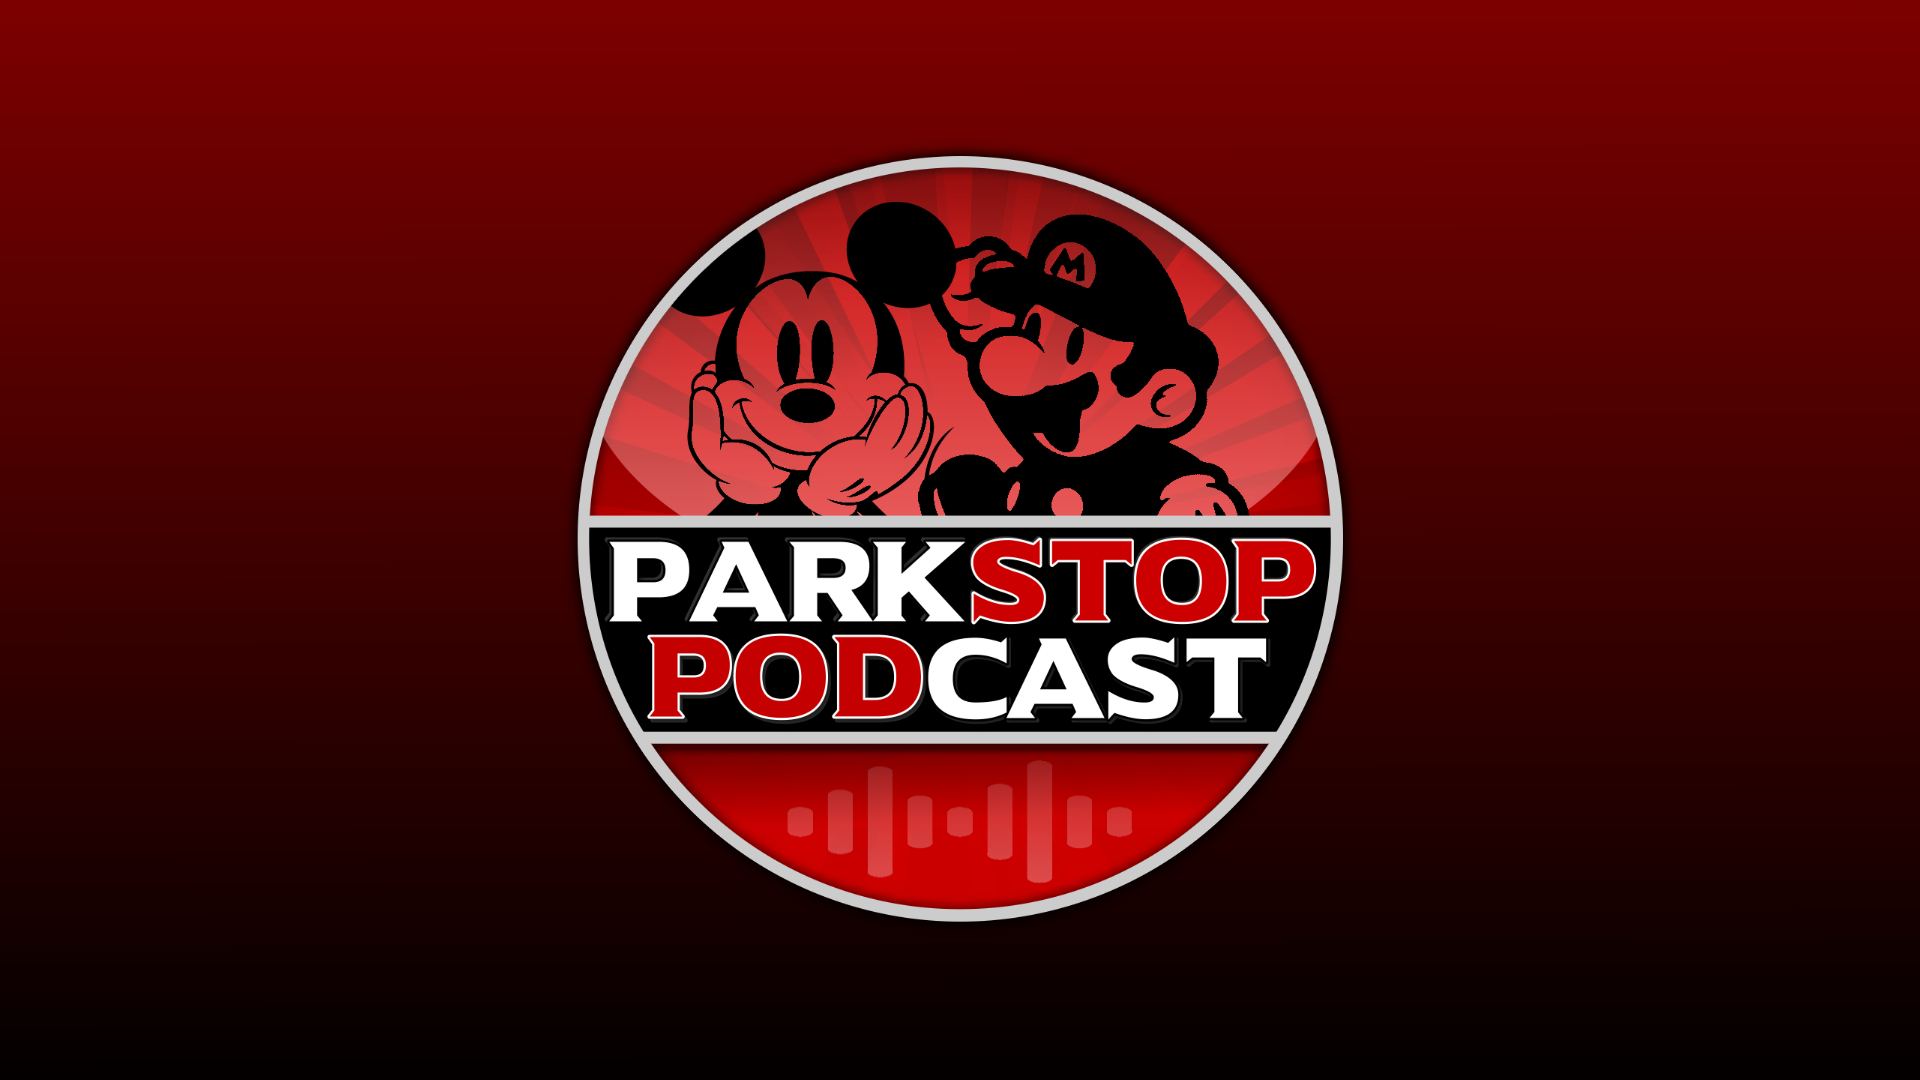 ParkStop Podcast: Episode 38 – Destination D23 & IAAPA Expo 2021